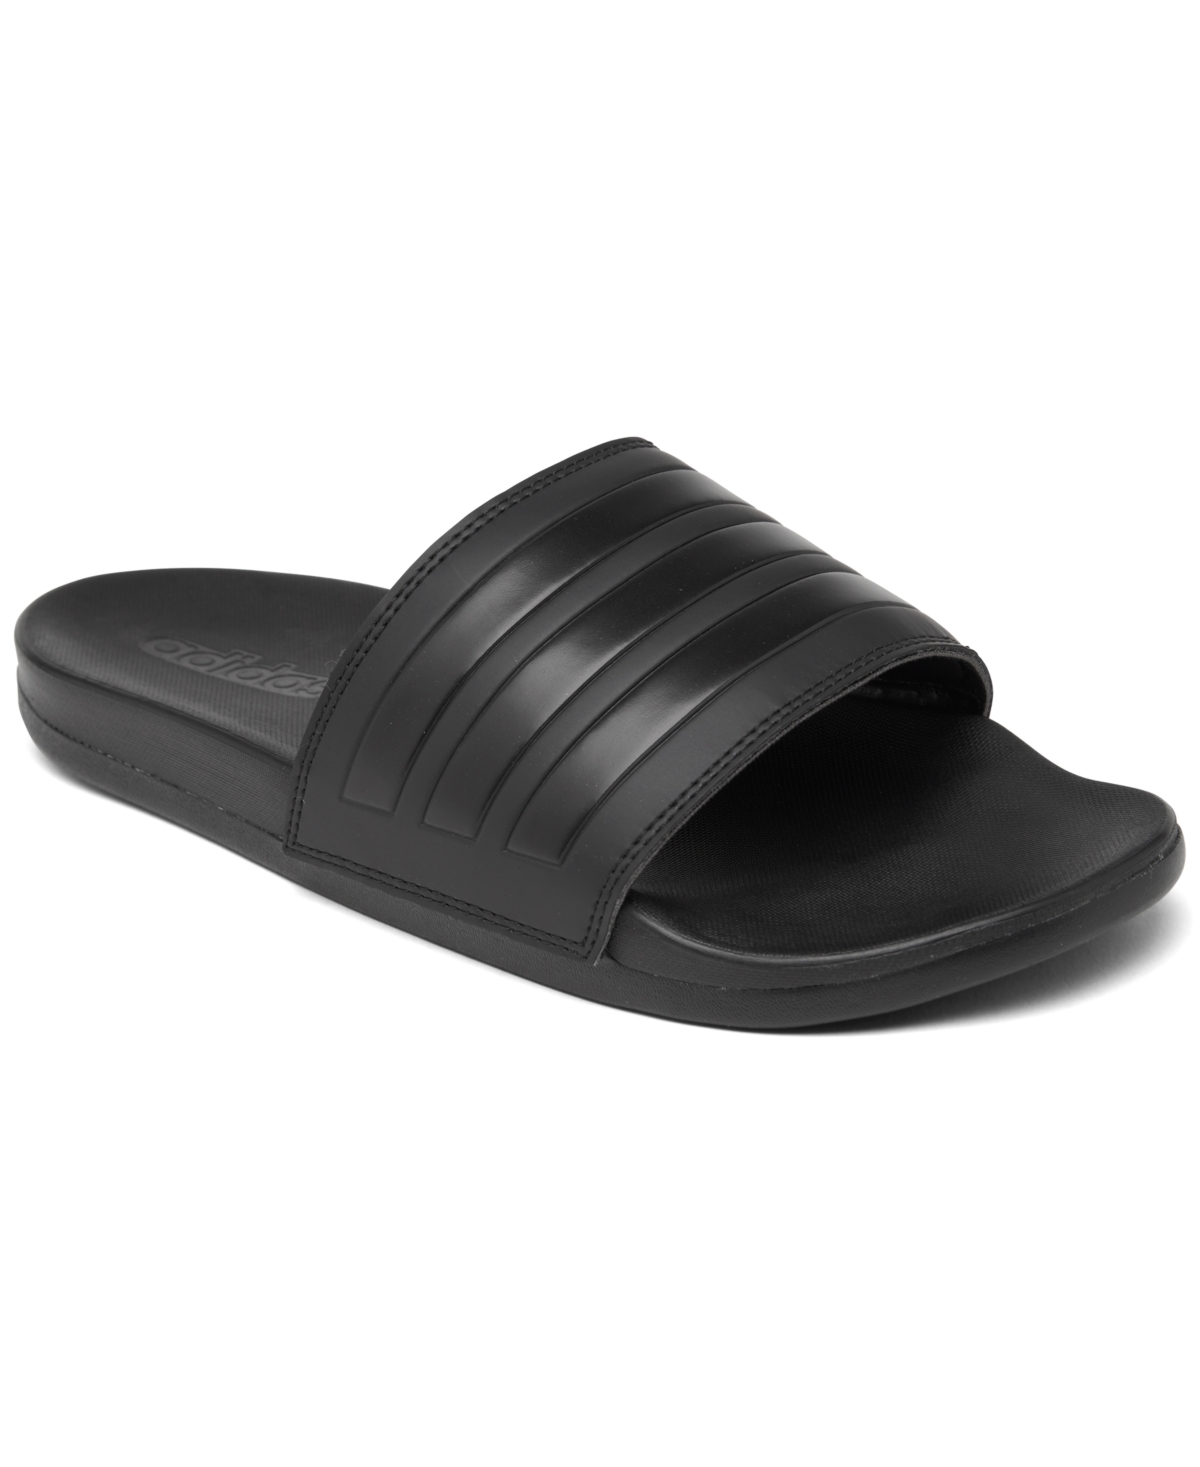 Men's Adilette Comfort Slide Sandals from Finish Line - Core Black